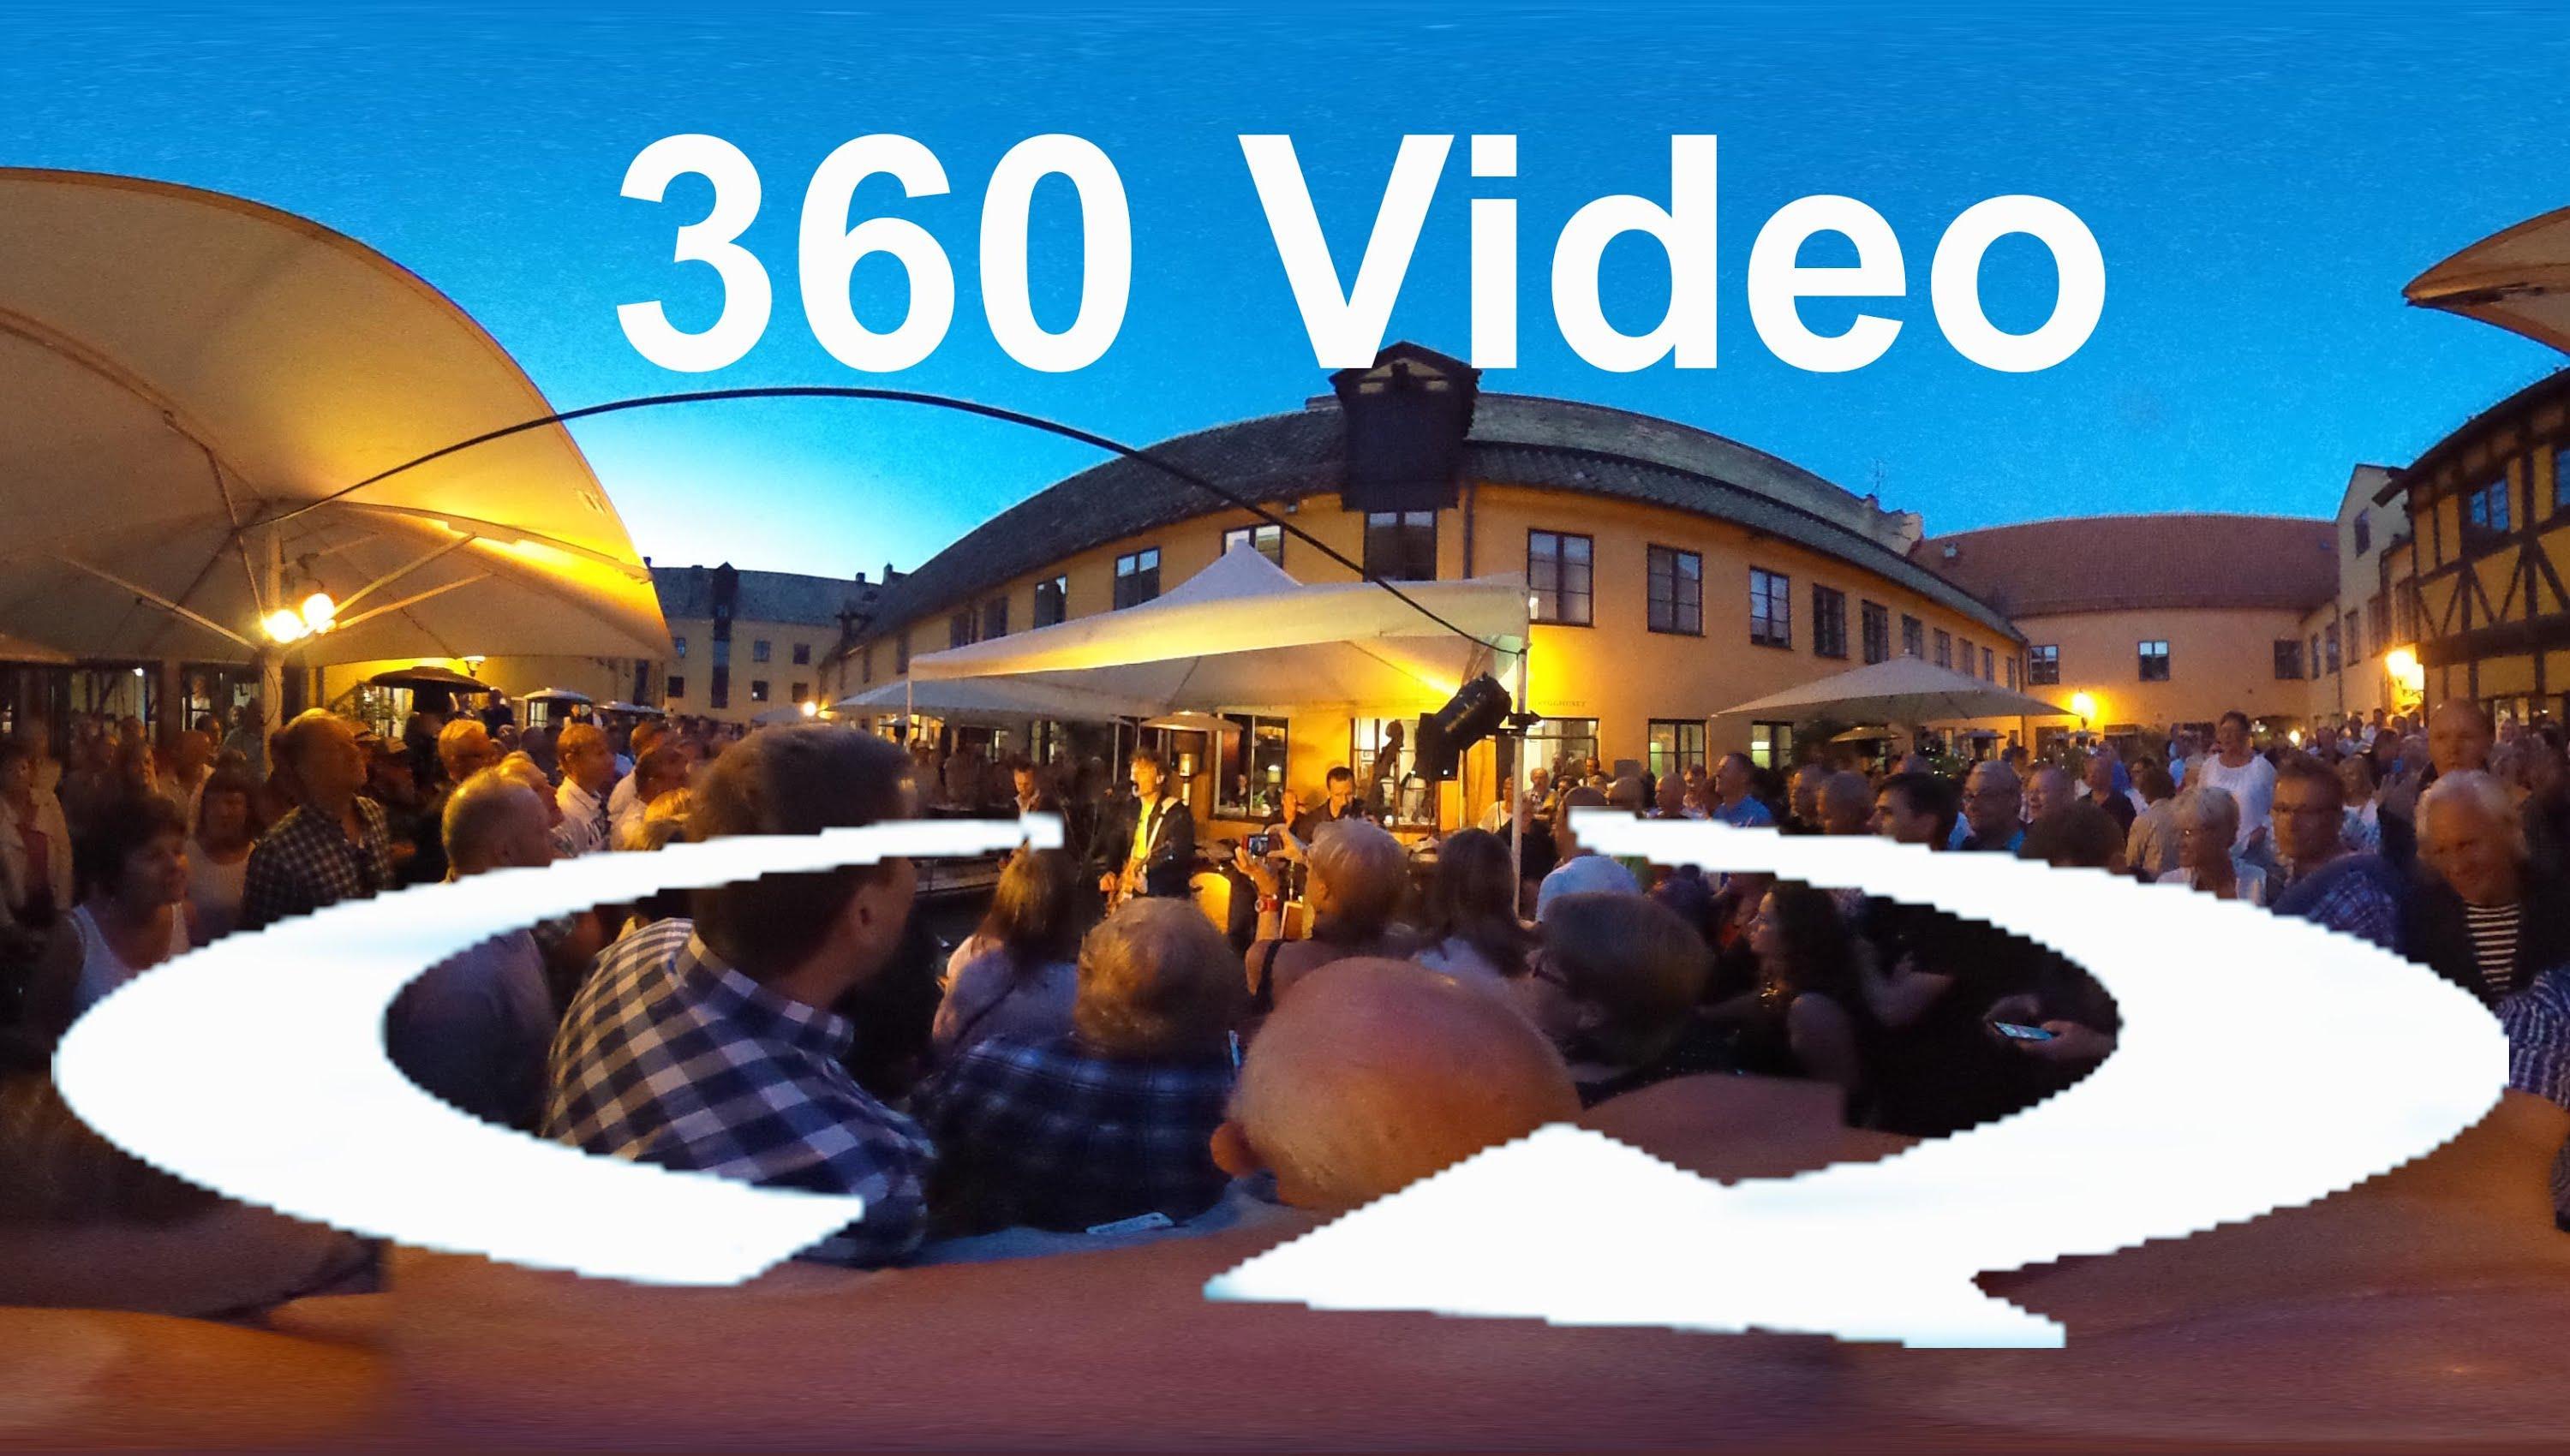 Vr 360 телефон. VR 360. Съемка 360 градусов. Изображения в 360 для VR. Видео 360 градусов.